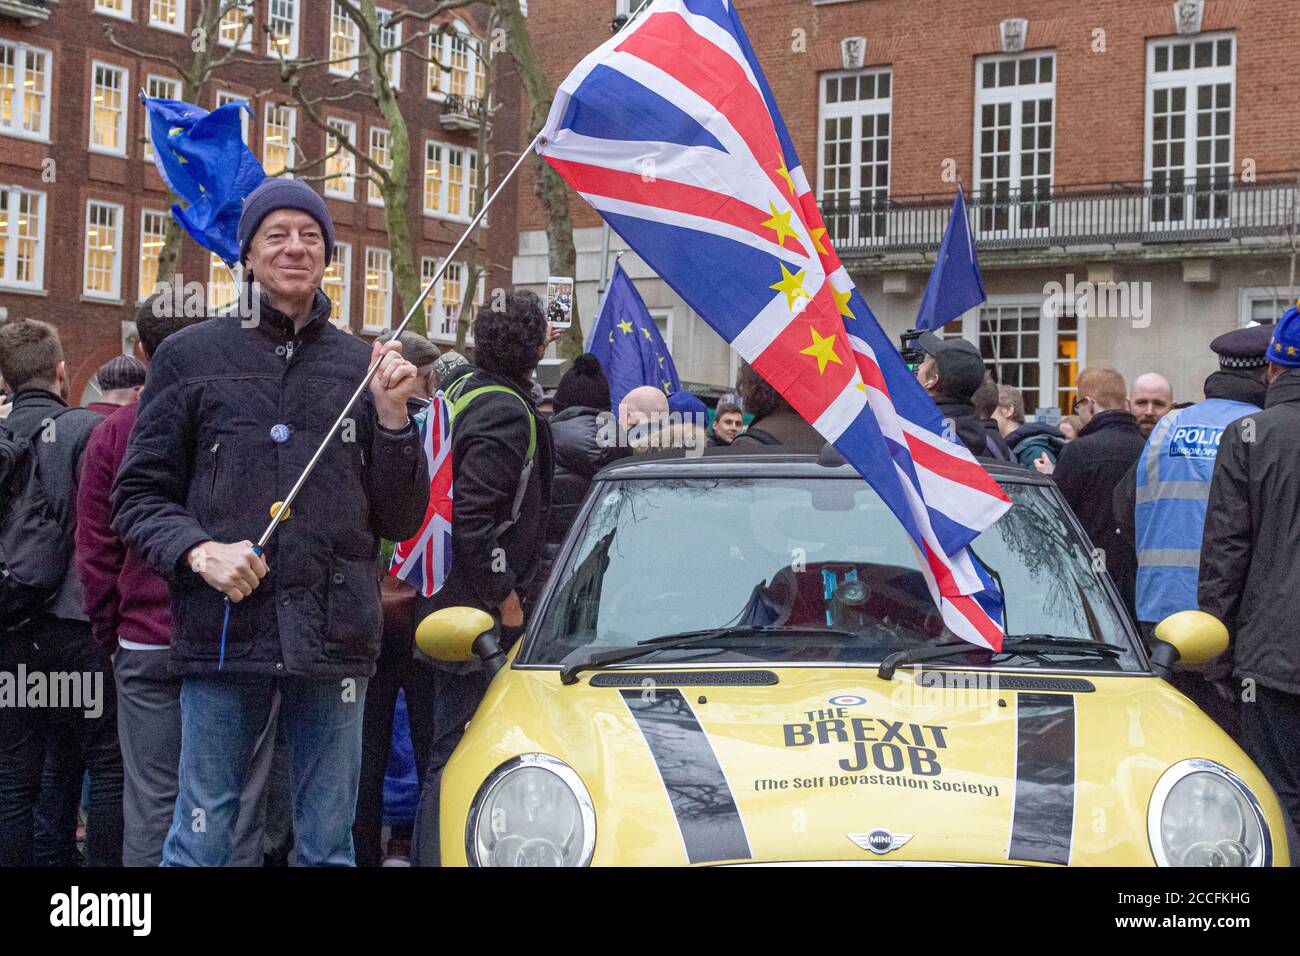 London, England.der Unterstützer von verbleibe wird vor dem Europahaus in Westminster stehen sehen, in Vorbereitung einer Mahnwache am Brexit-Tag am Vorabend des Austritts des Vereinigten Königreichs aus der Europäischen Union um 11 Uhr am Freitag, dem 31. Januar 2020, basierend auf dem Verweis vom 23. Juni 2016. Stockfoto